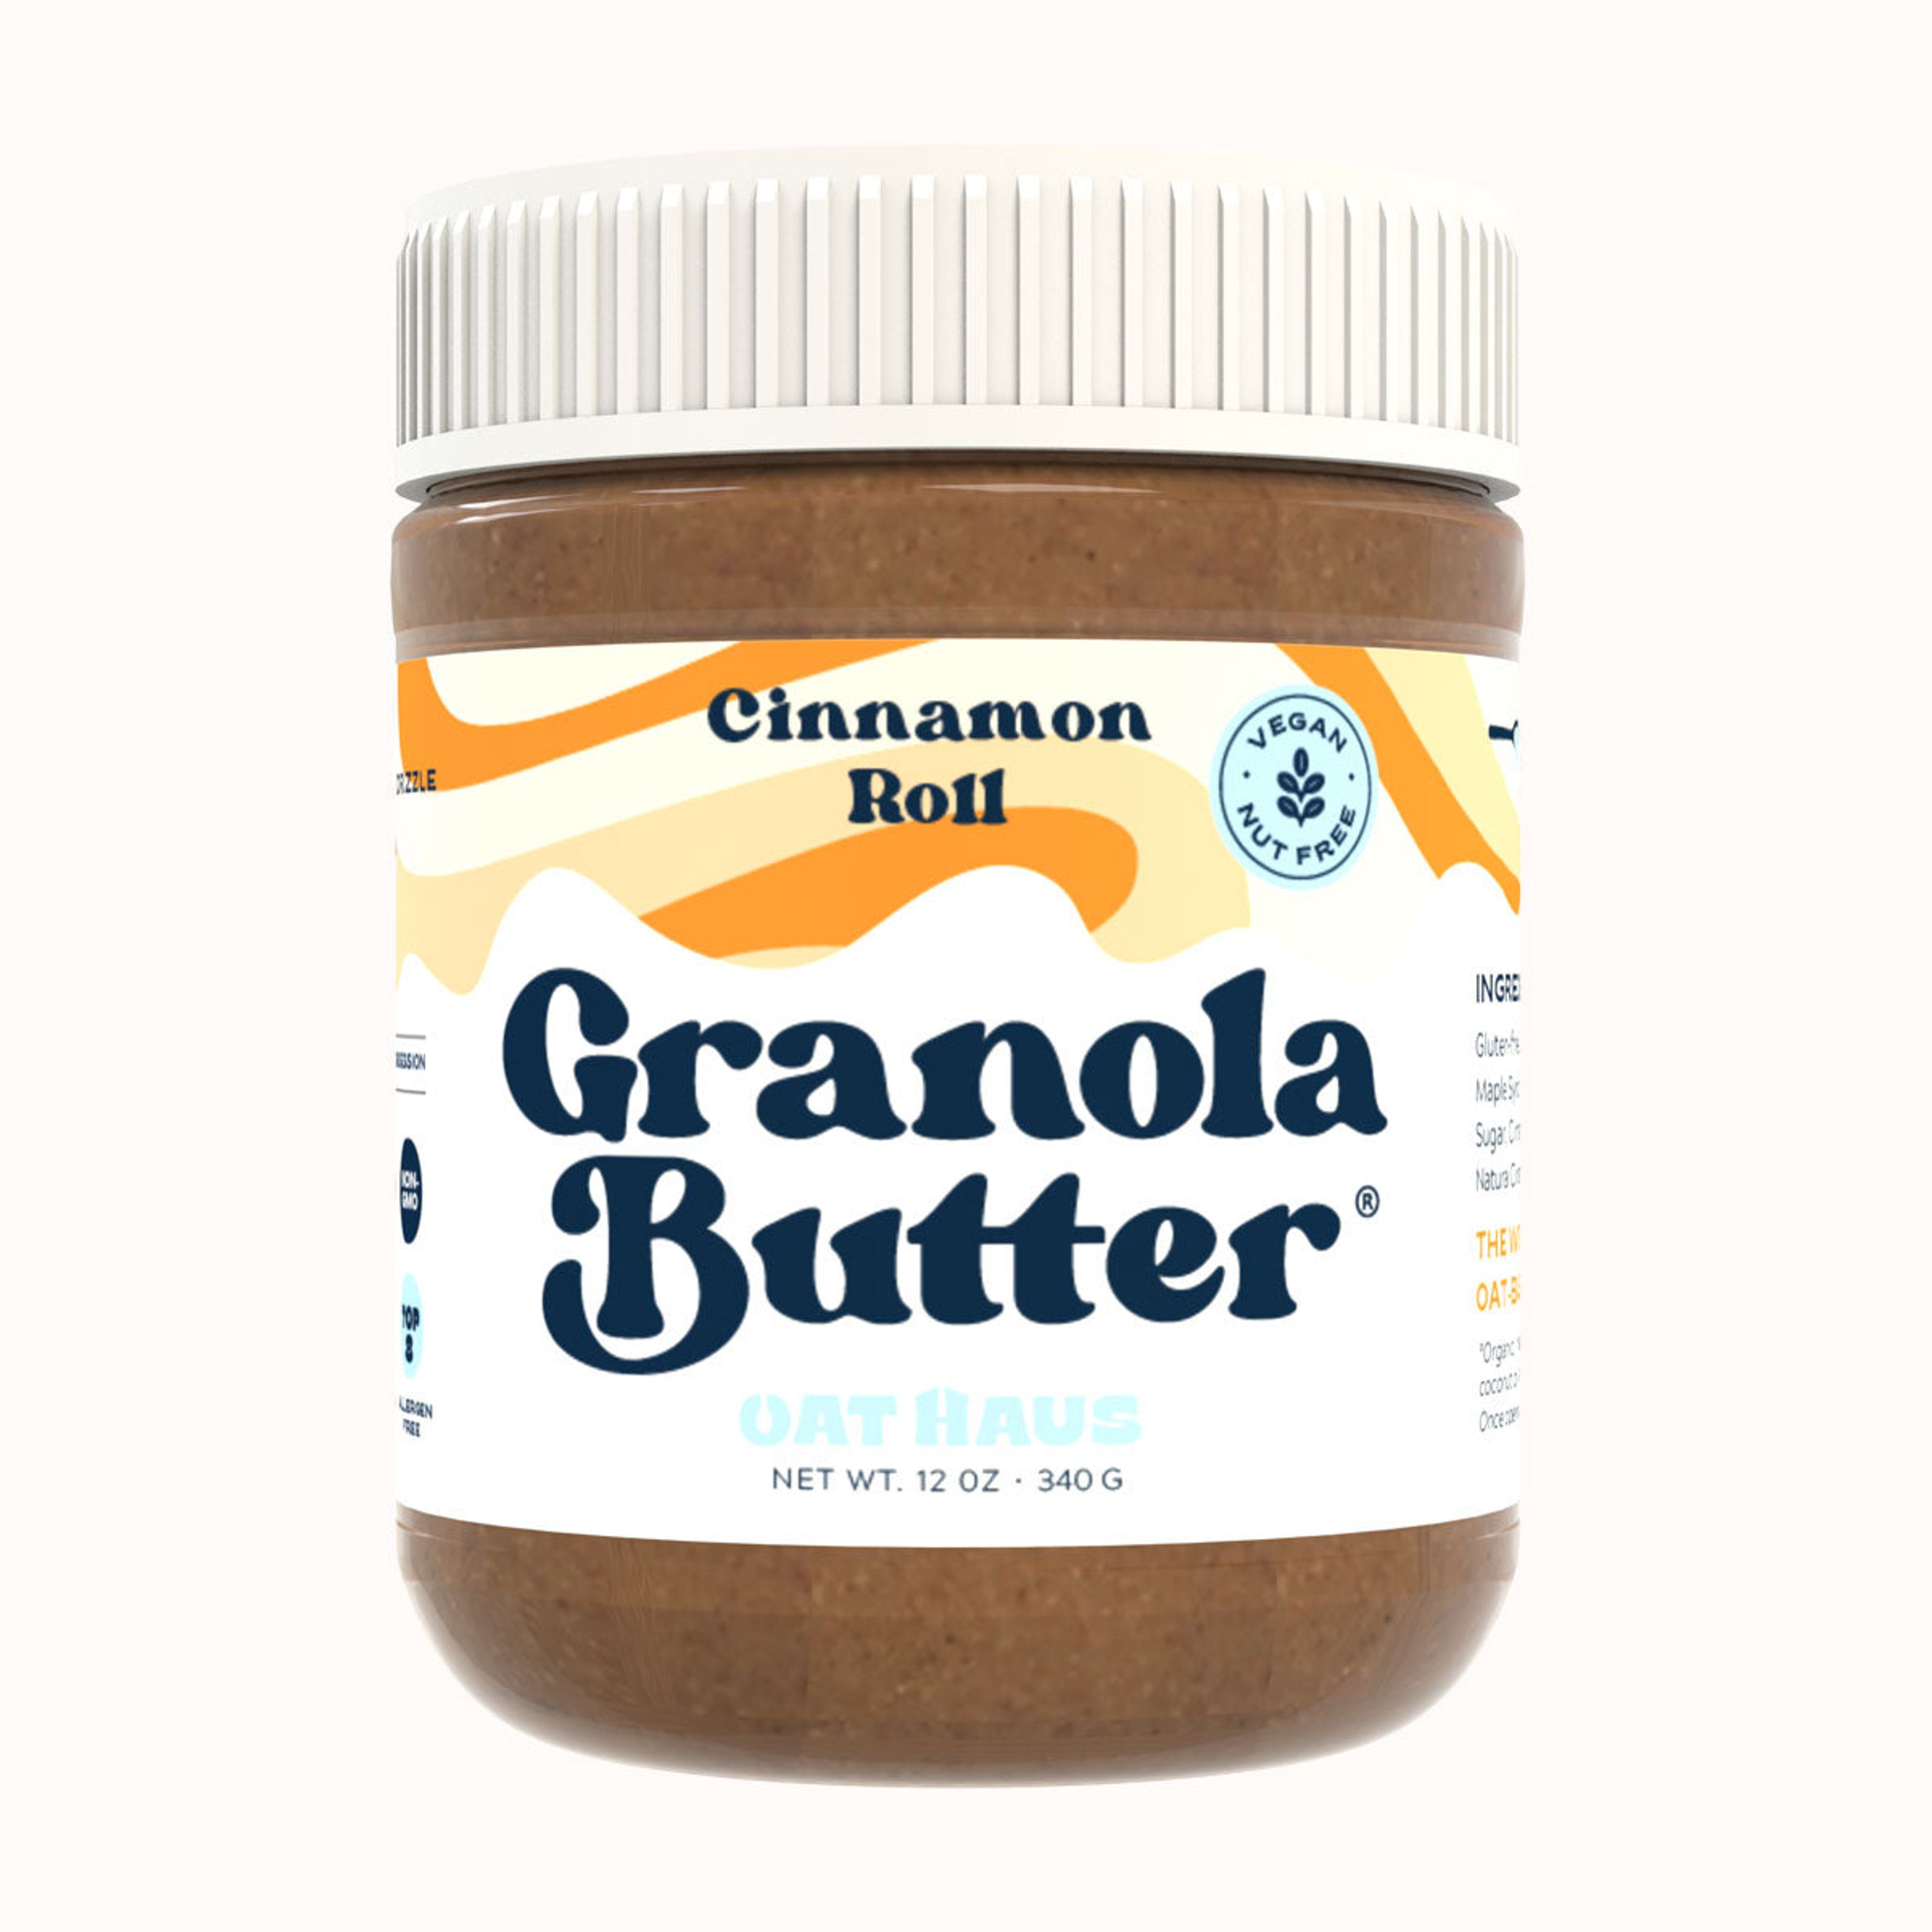 Cinnamon Roll Granola Butter